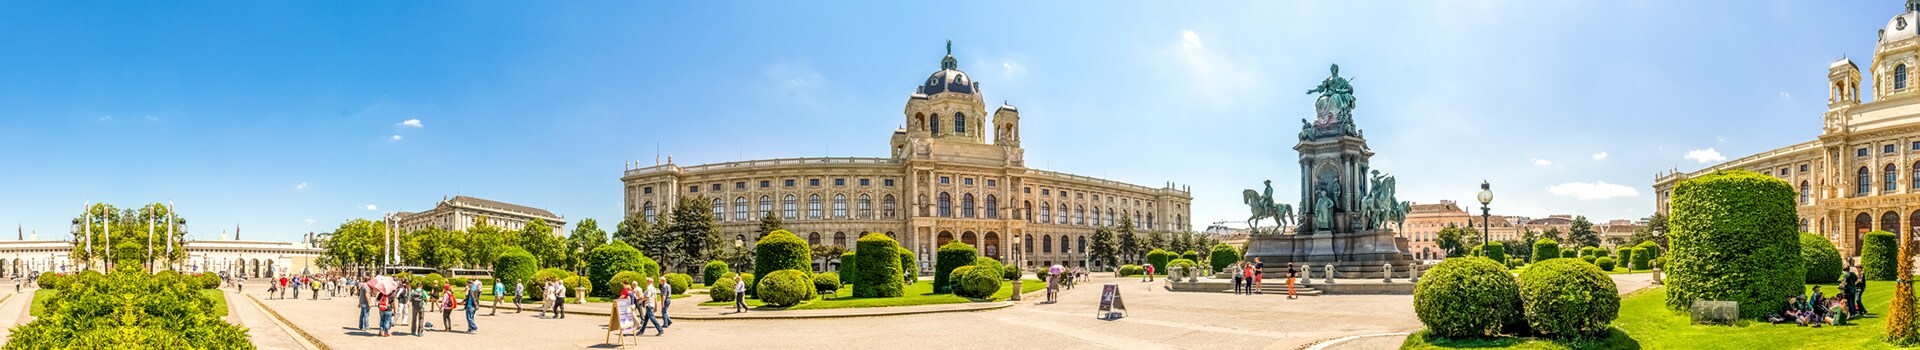 Nürnberg - Wien